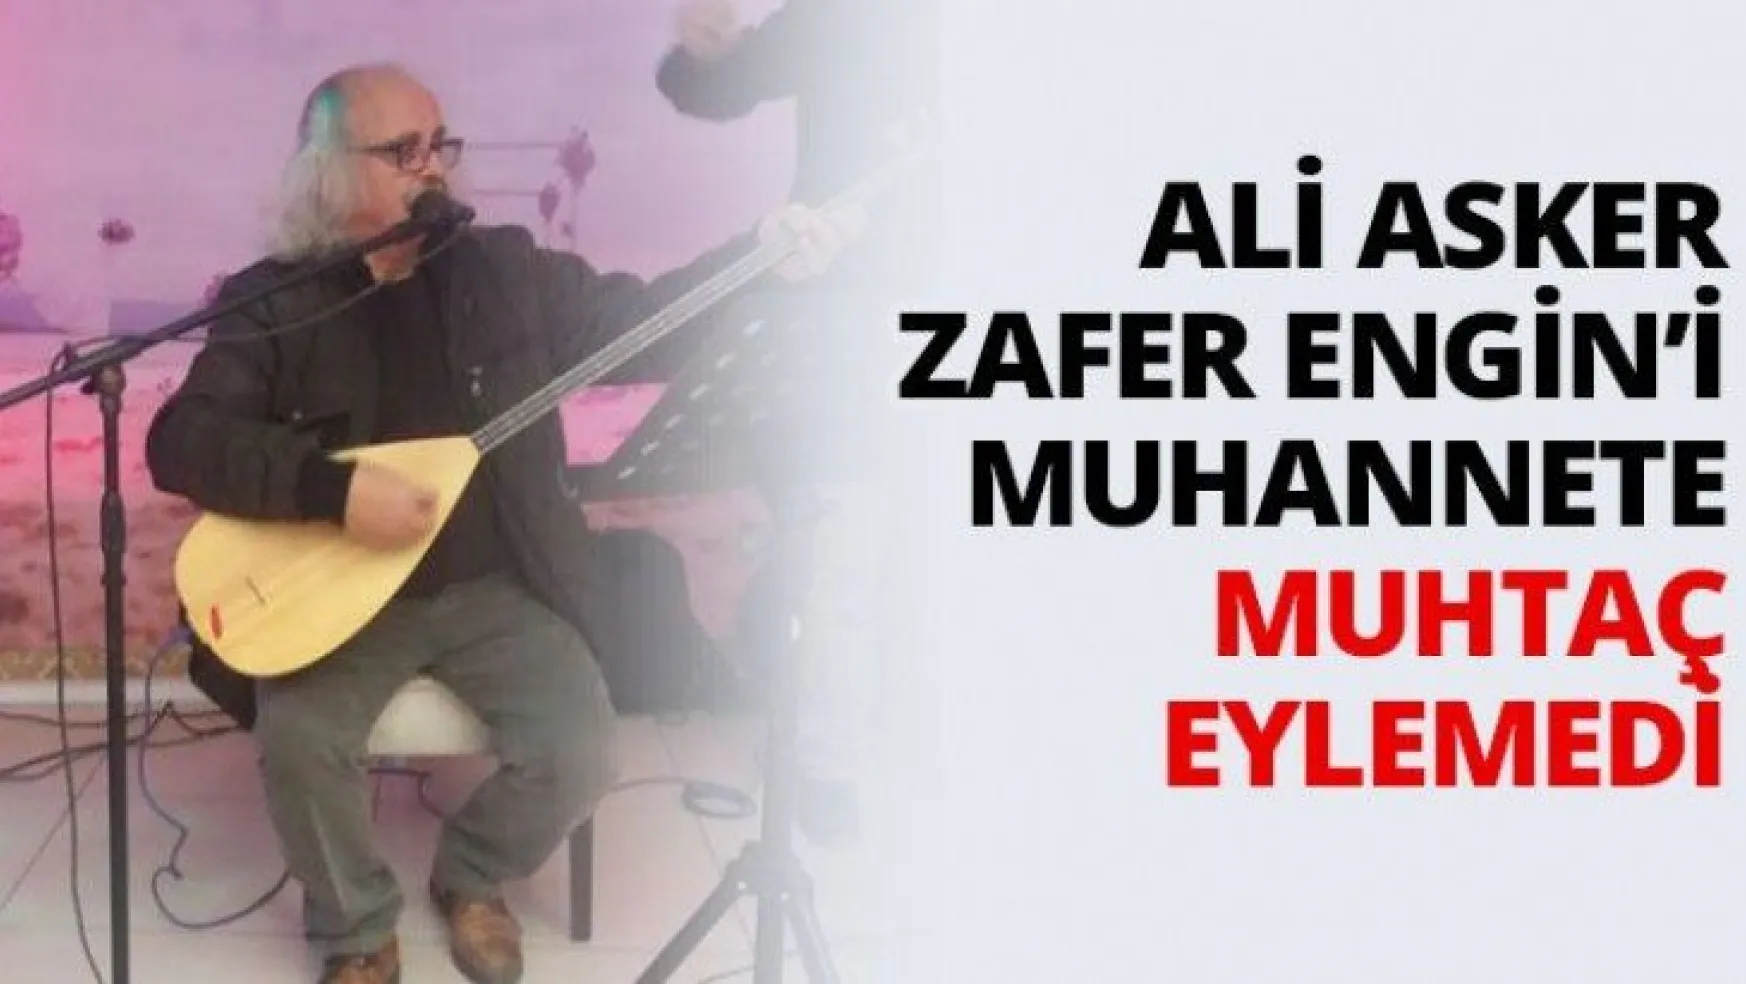 Ali Asker Zafer Engin'i muhannete muhtaç eylemedi